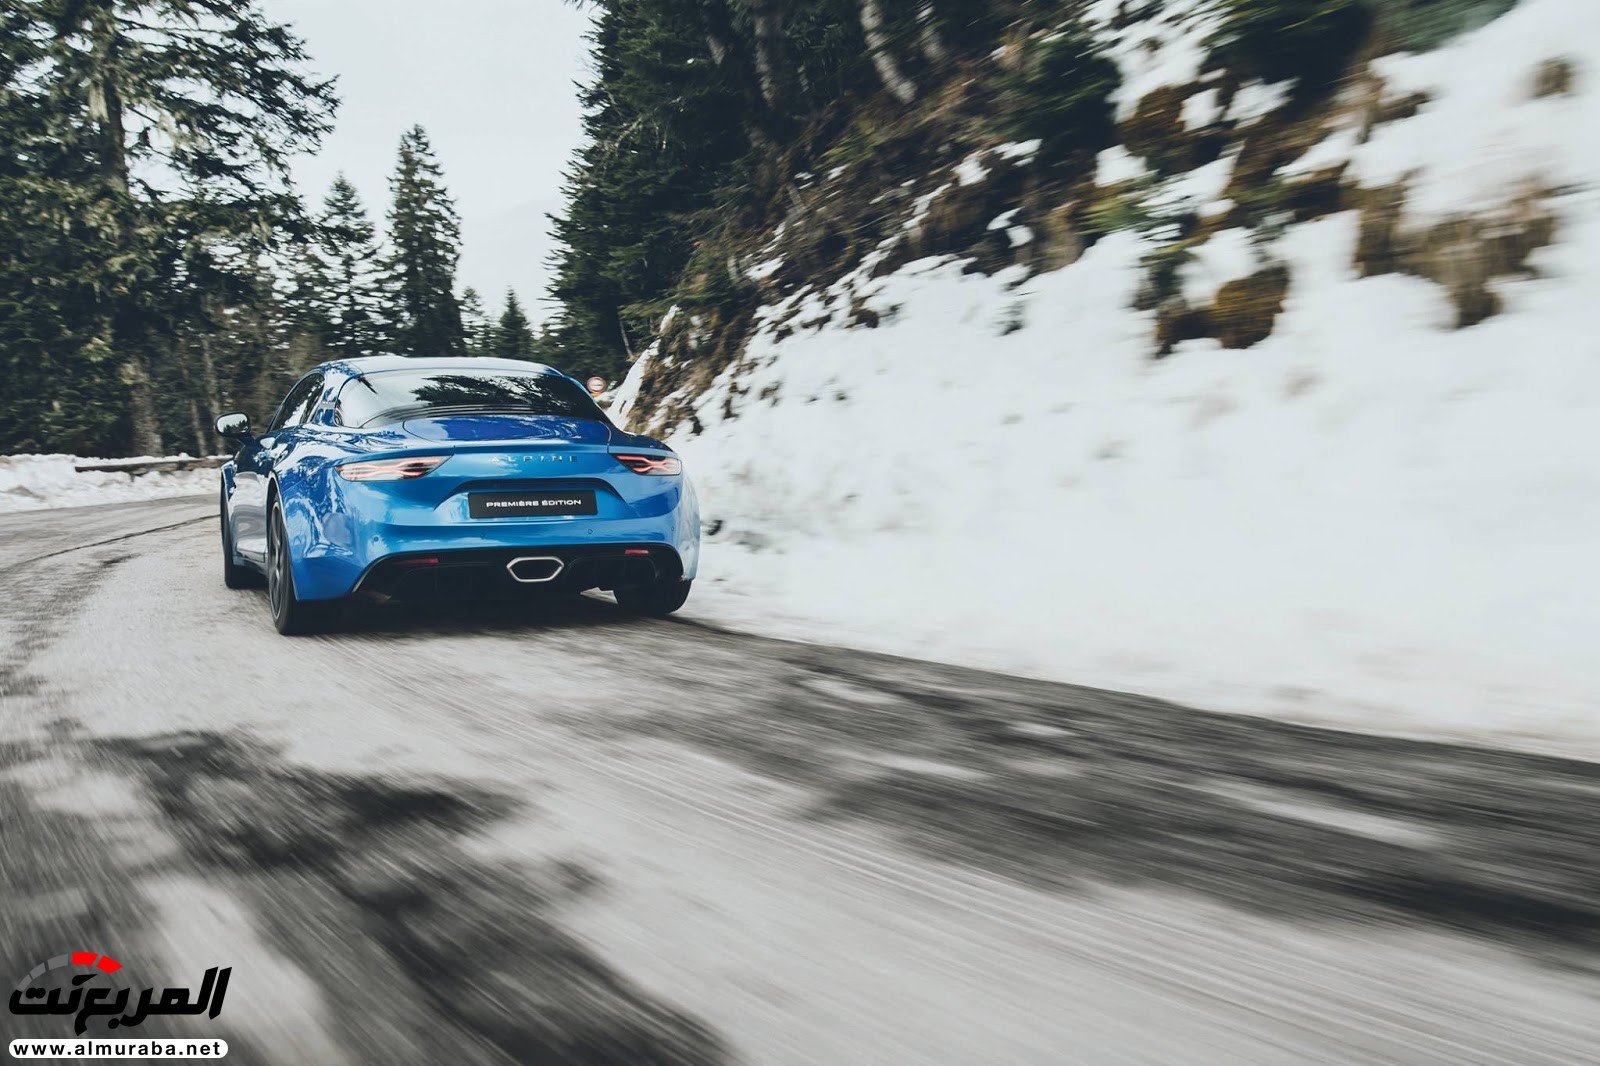 "صور مسربة" تكشف عن عودة "ألباين" بالسيارة الرياضية A110 الجديدة كليا 2018 Alpine 44